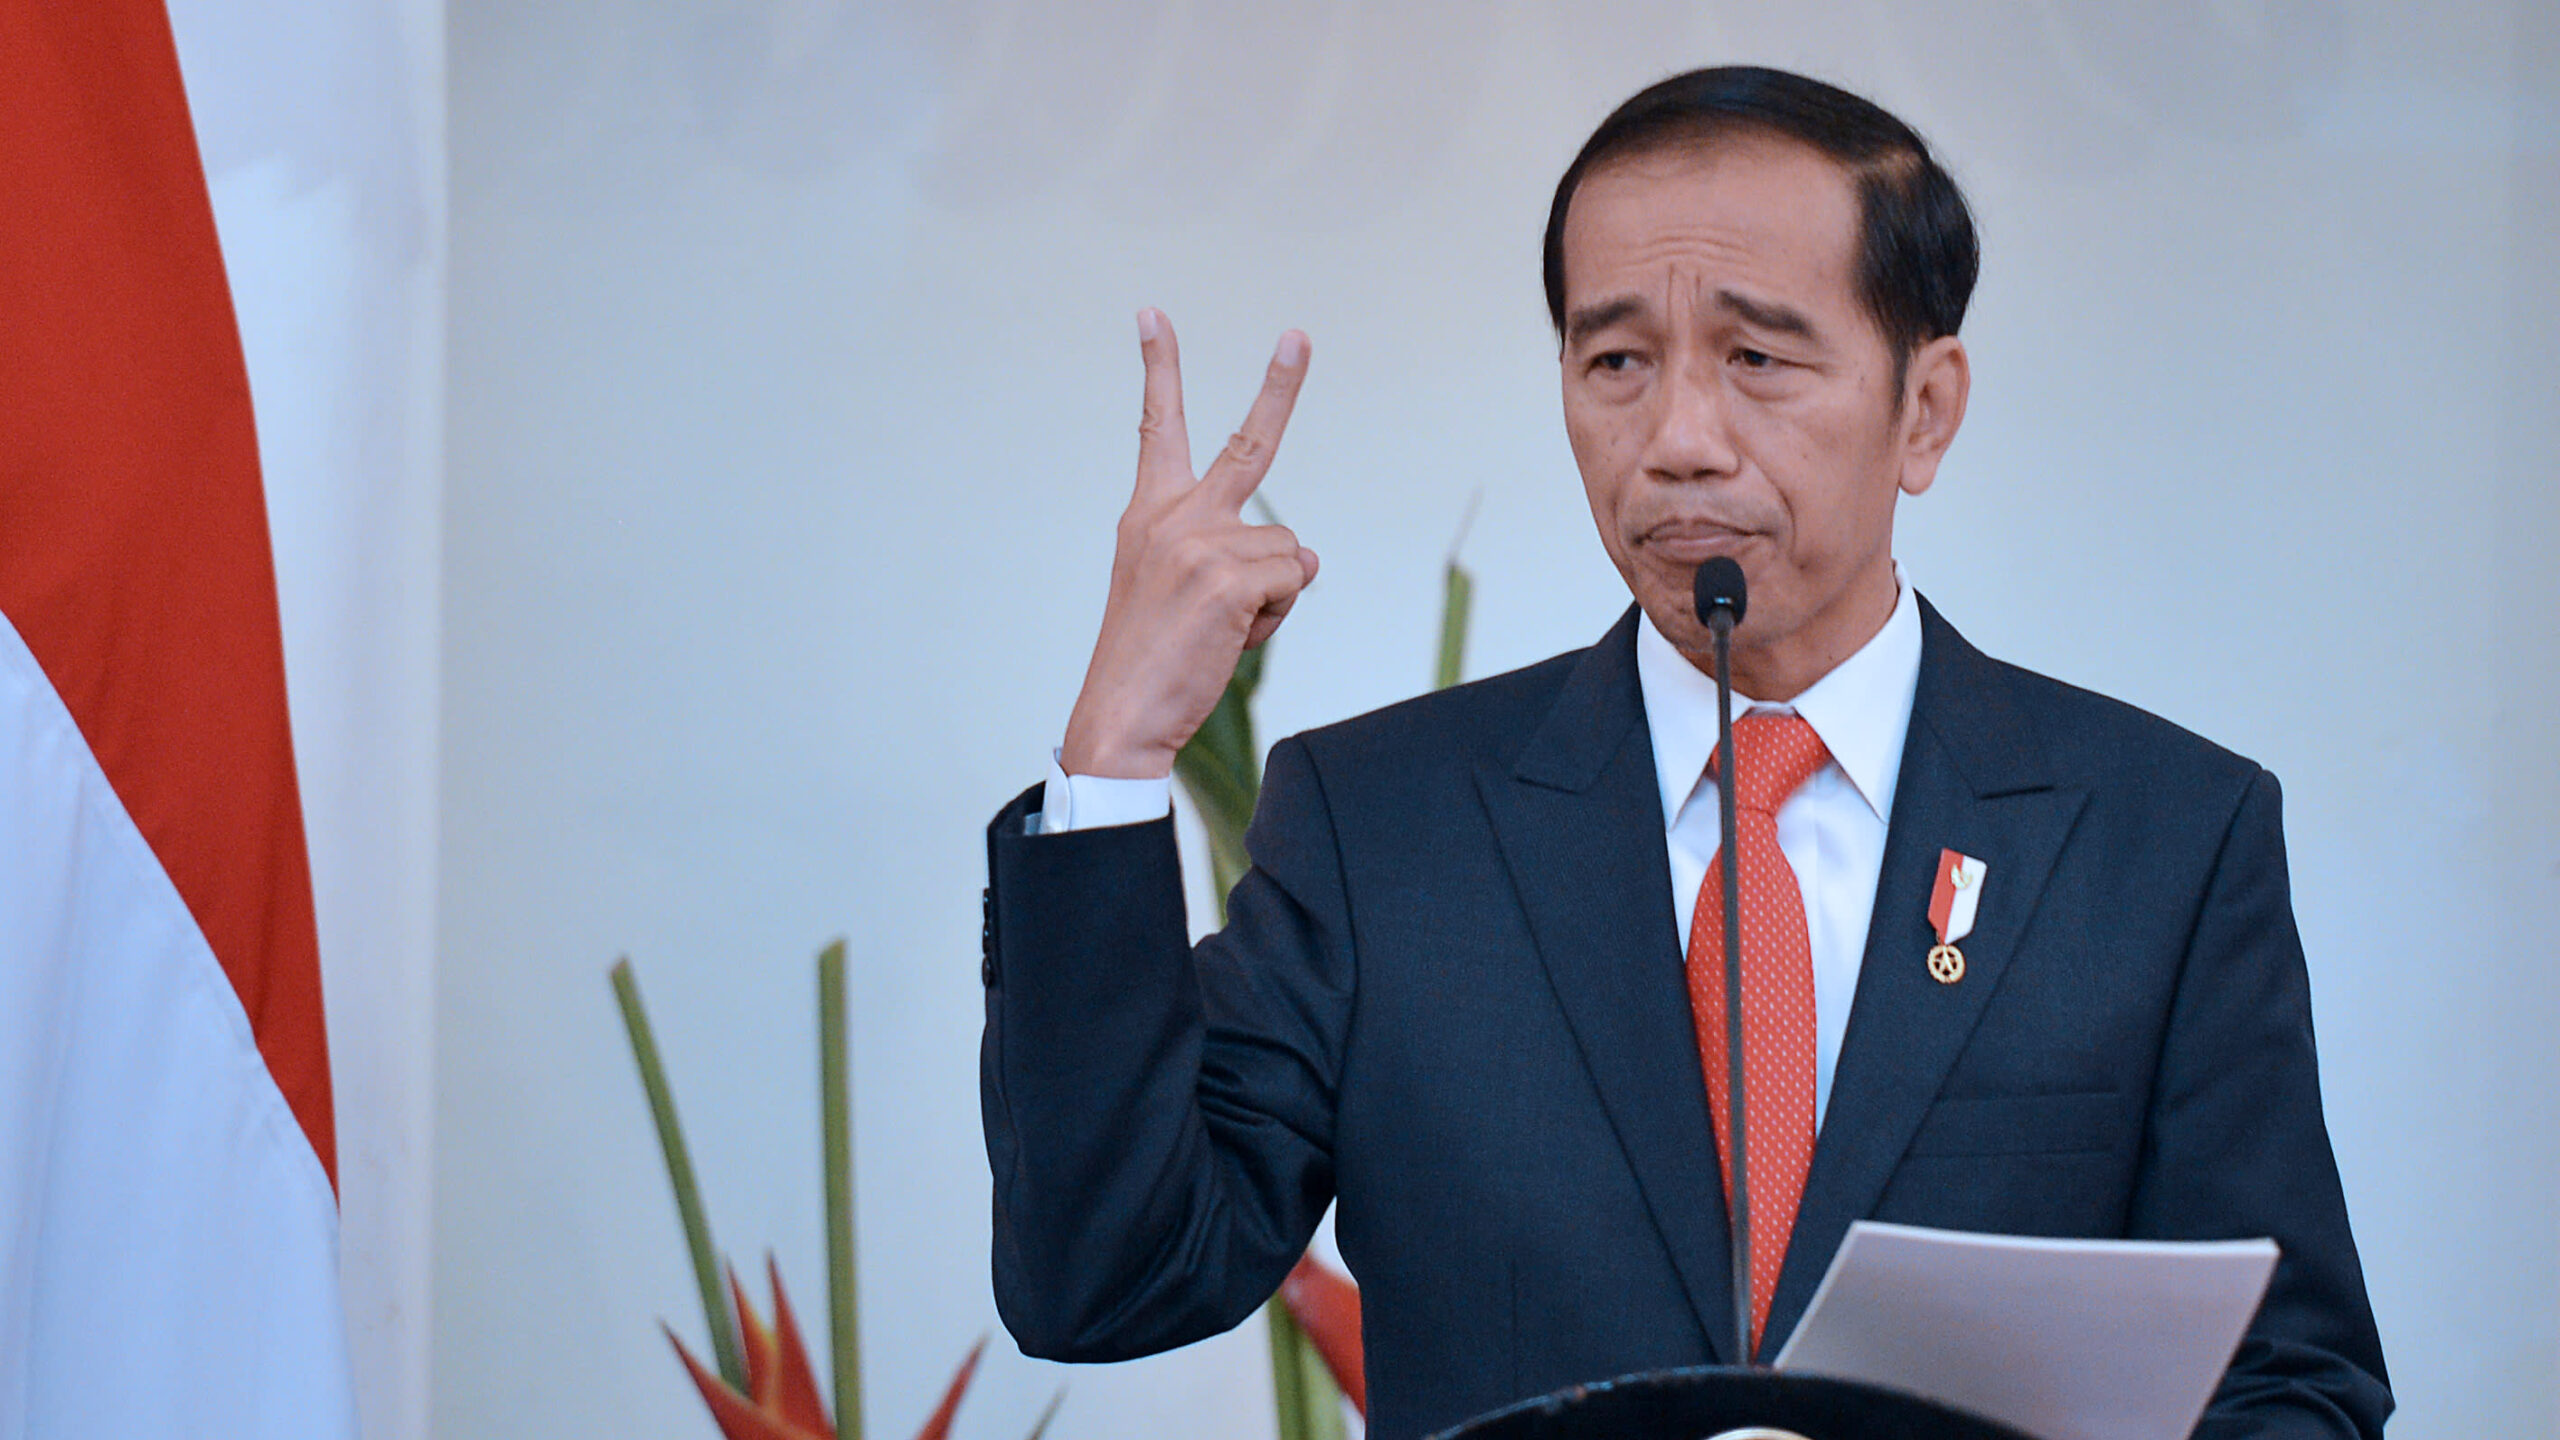 Ramai Pernyataan Jokowi Soal Gaungkan Benci Produk Luar, Beberapa Pejabat Pasang Badan